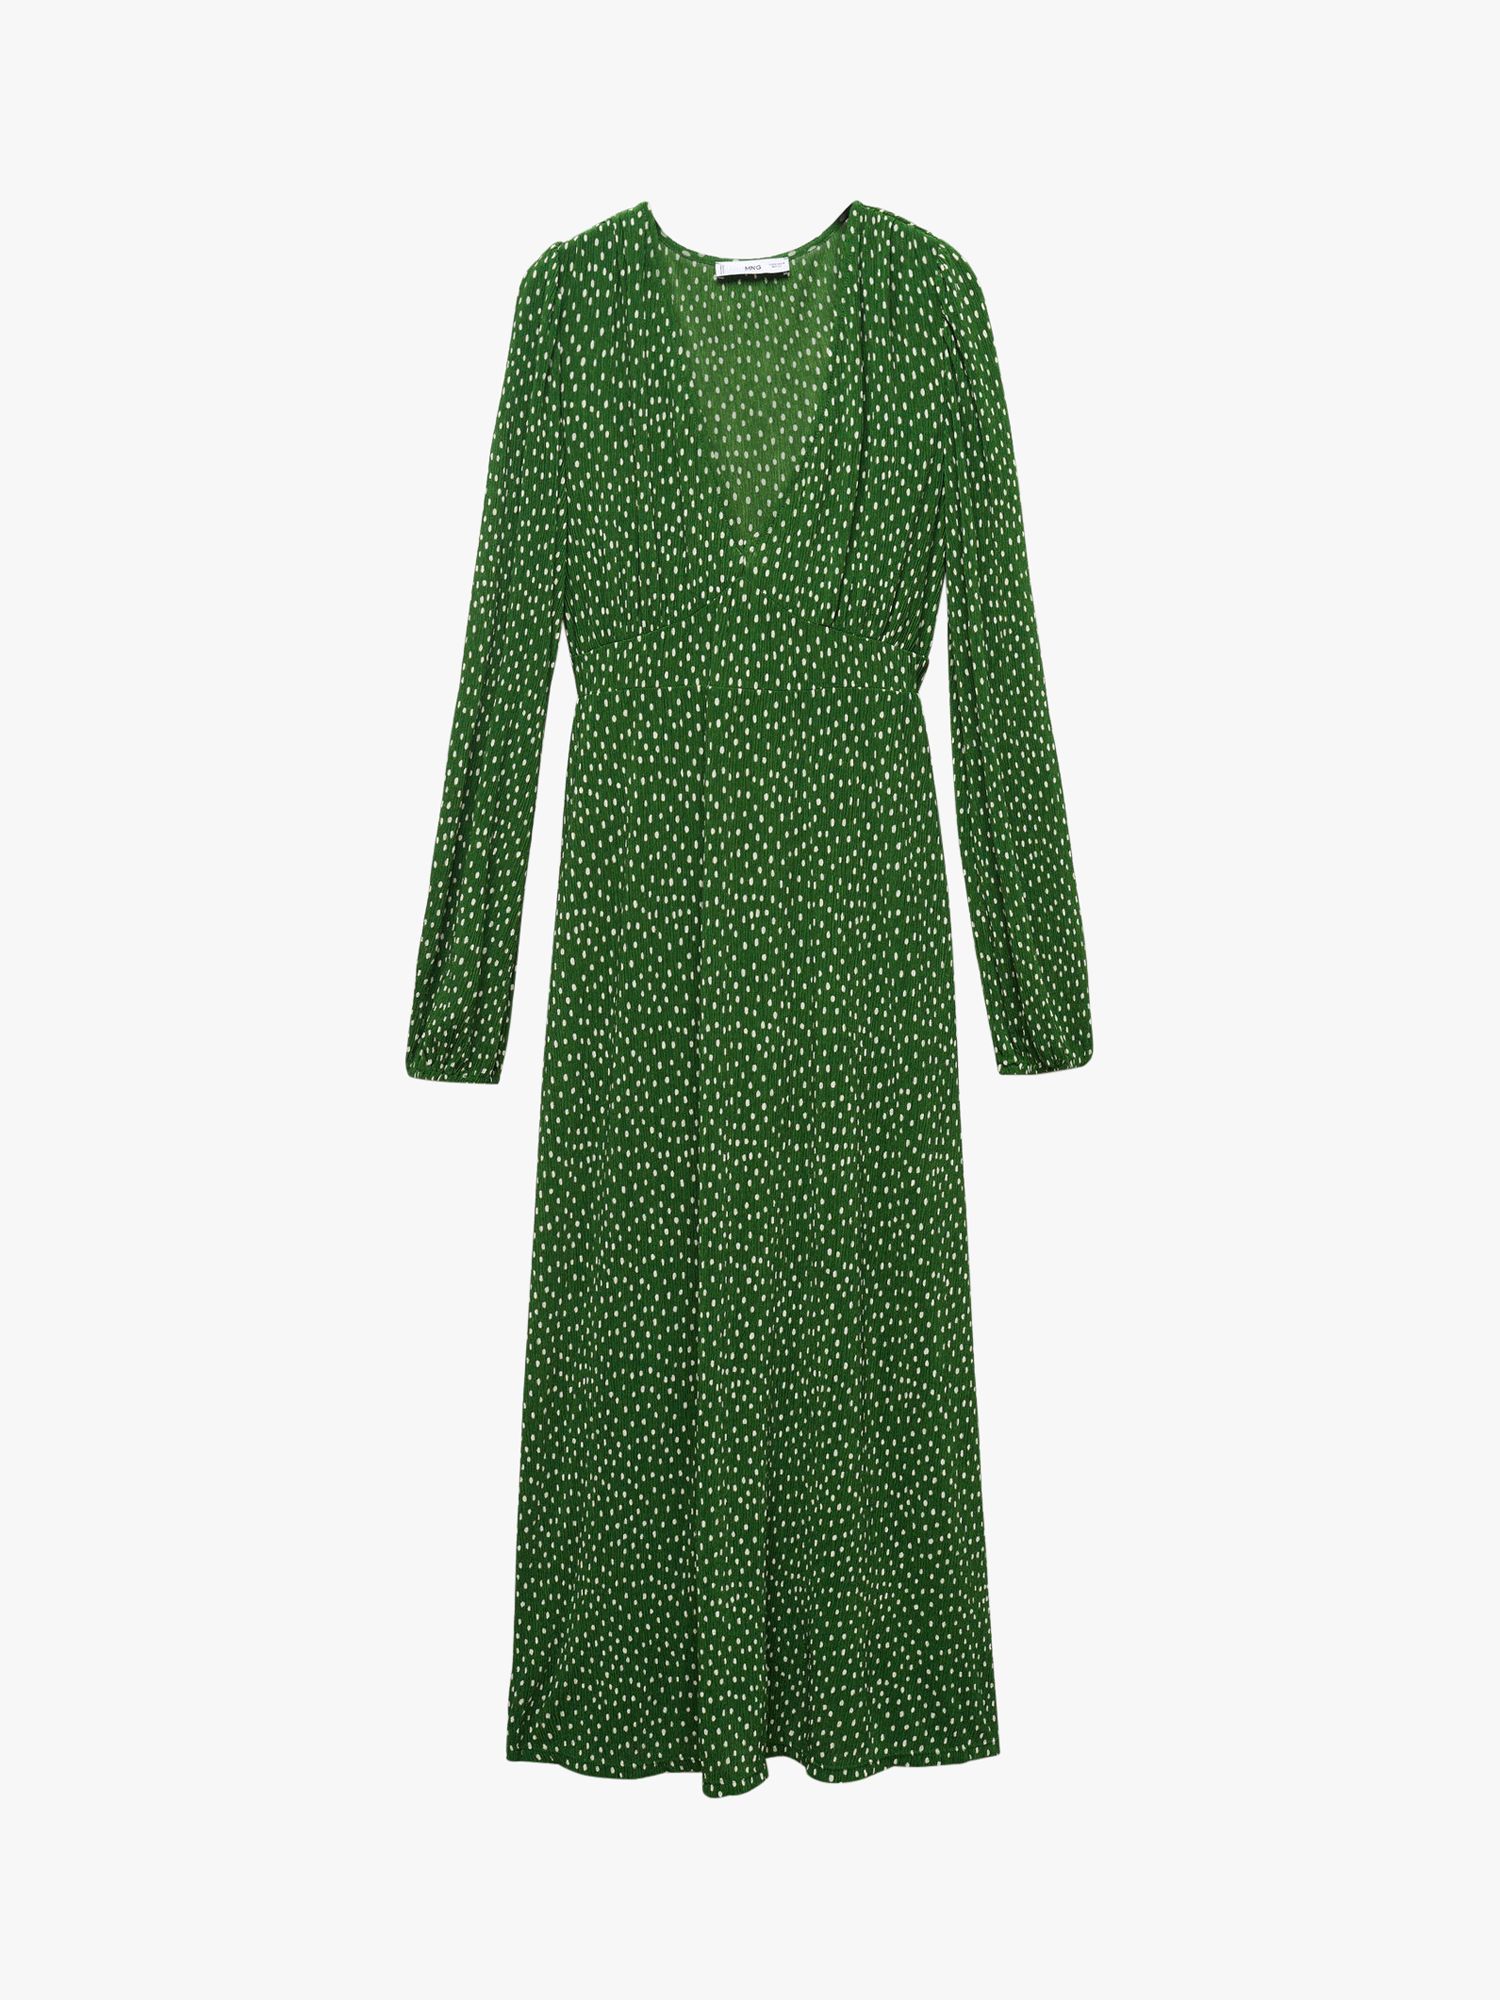 Mango Mar Spot Print Midi Dress, Green, 12